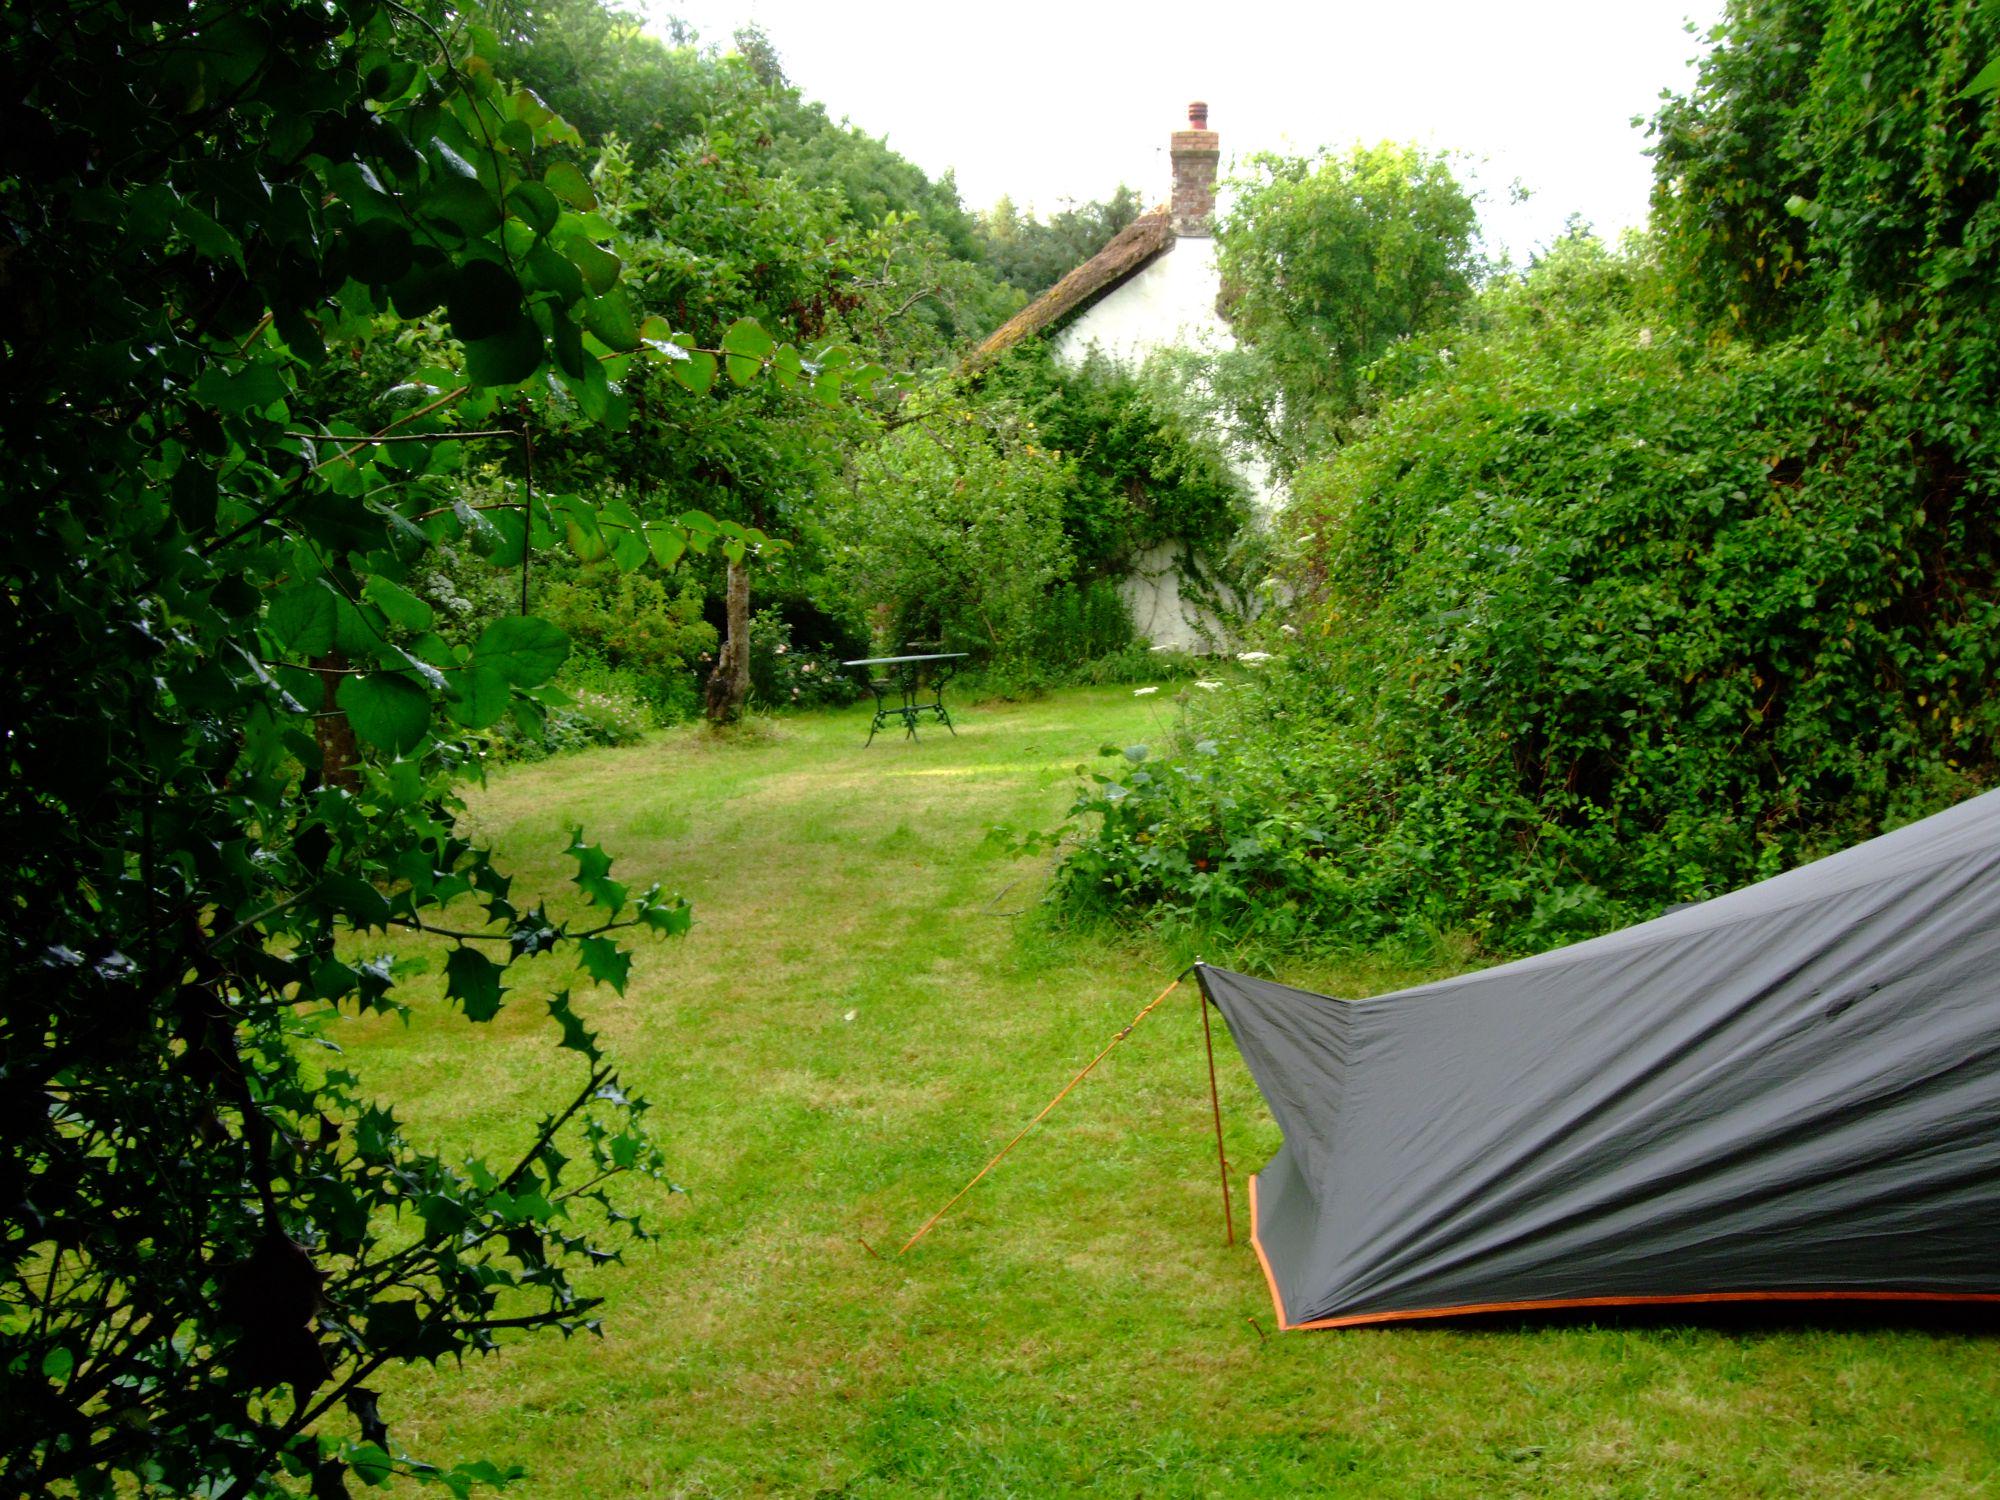 Dawlish Camping | Best campsites in Dawlish, Devon